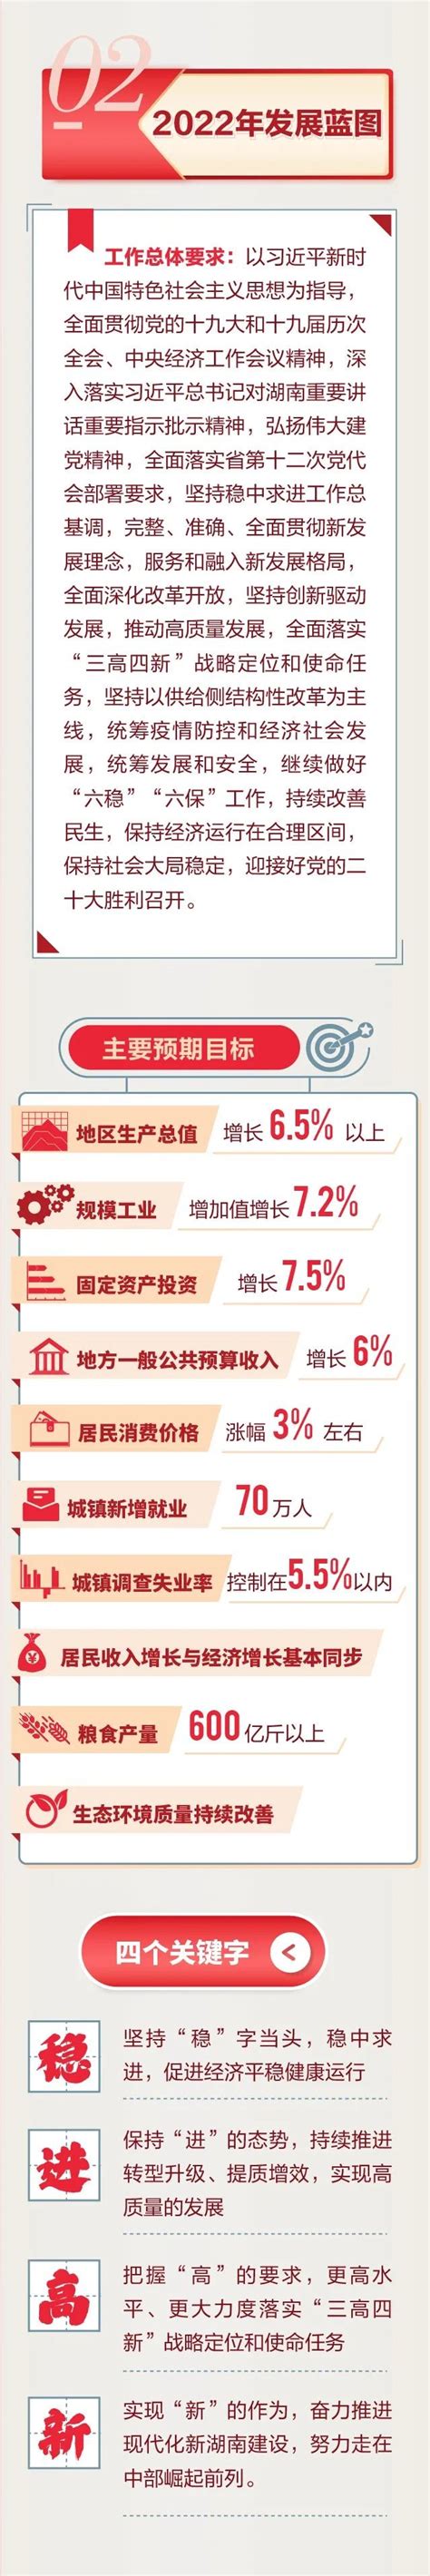 衡阳市人民政府门户网站-一图速览丨湖南省政府工作报告干货来了，重点、亮点都在这